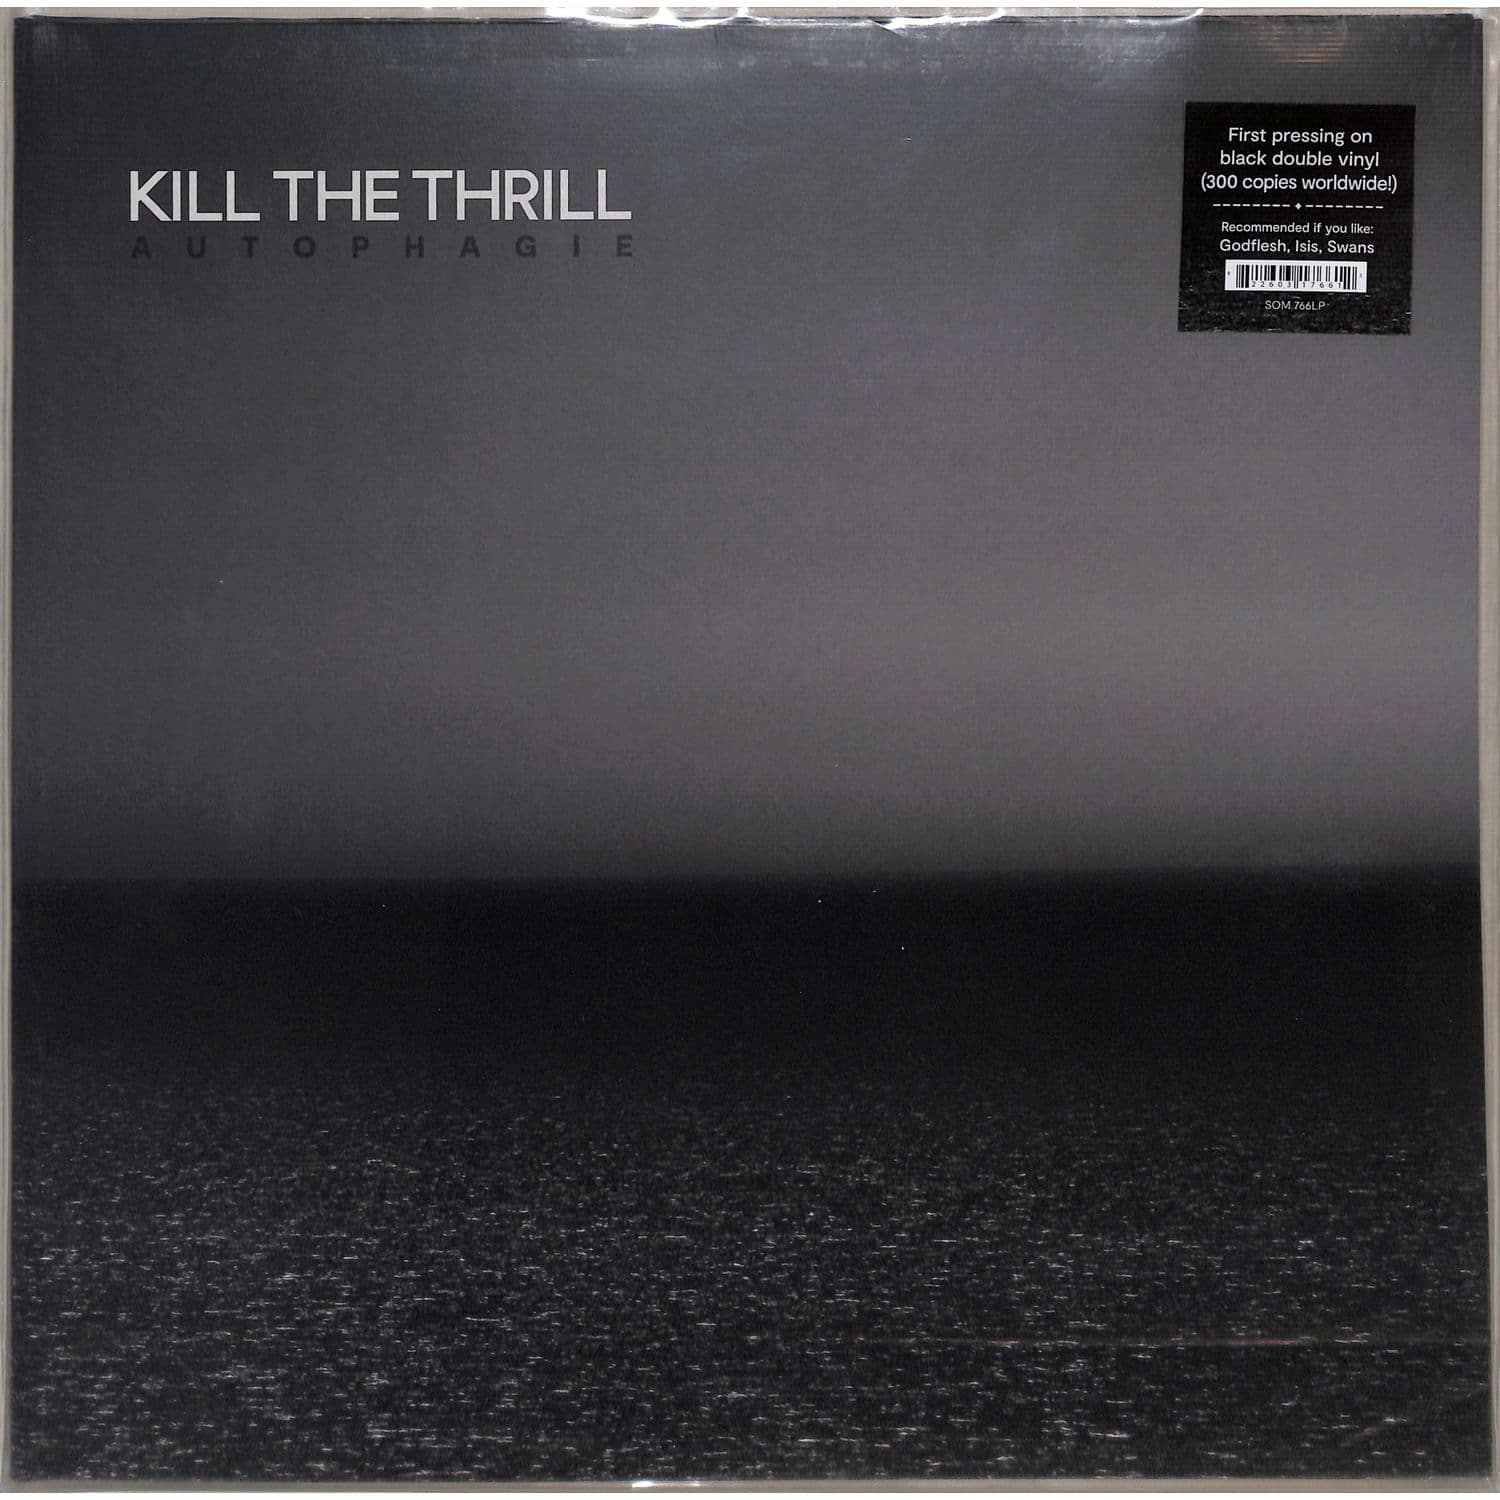 Kill The Thrill - AUTOPHAGIE 